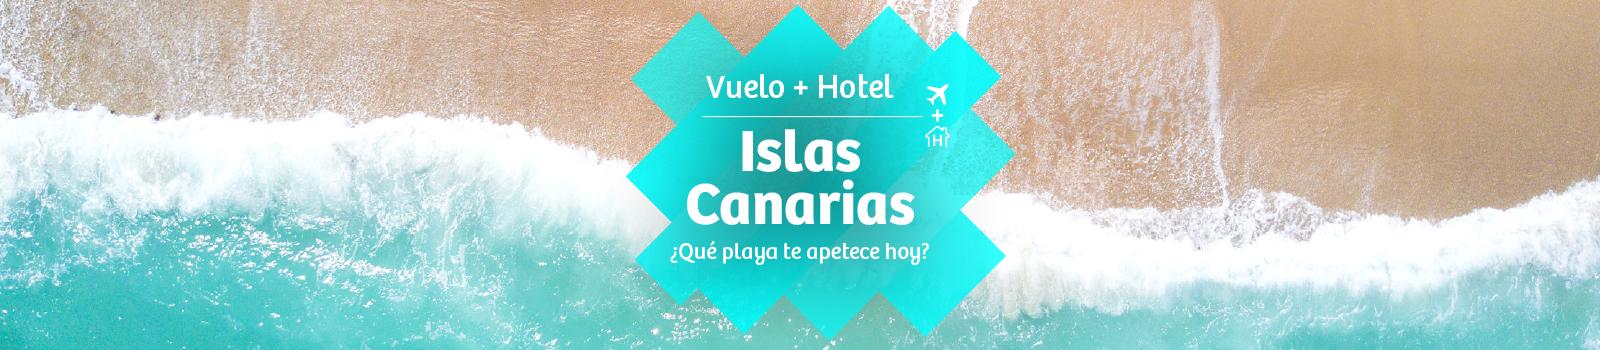 Vuelo + Canarias. Ofertas | Viajes